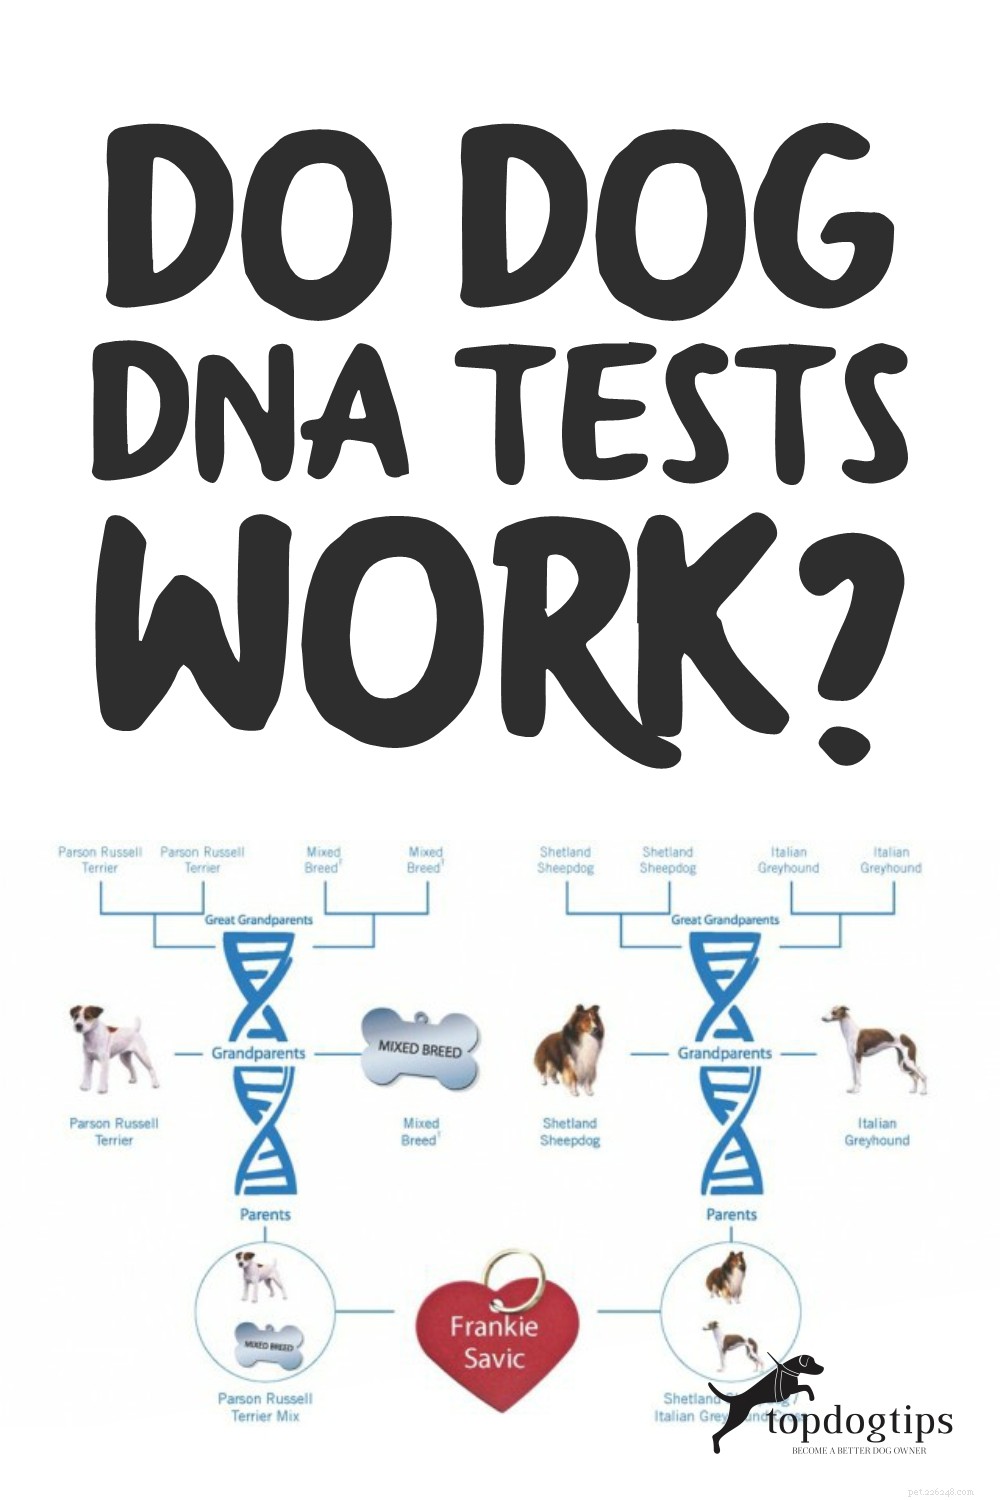 Fungerar DNA-tester för hundar? Hur exakta är de?